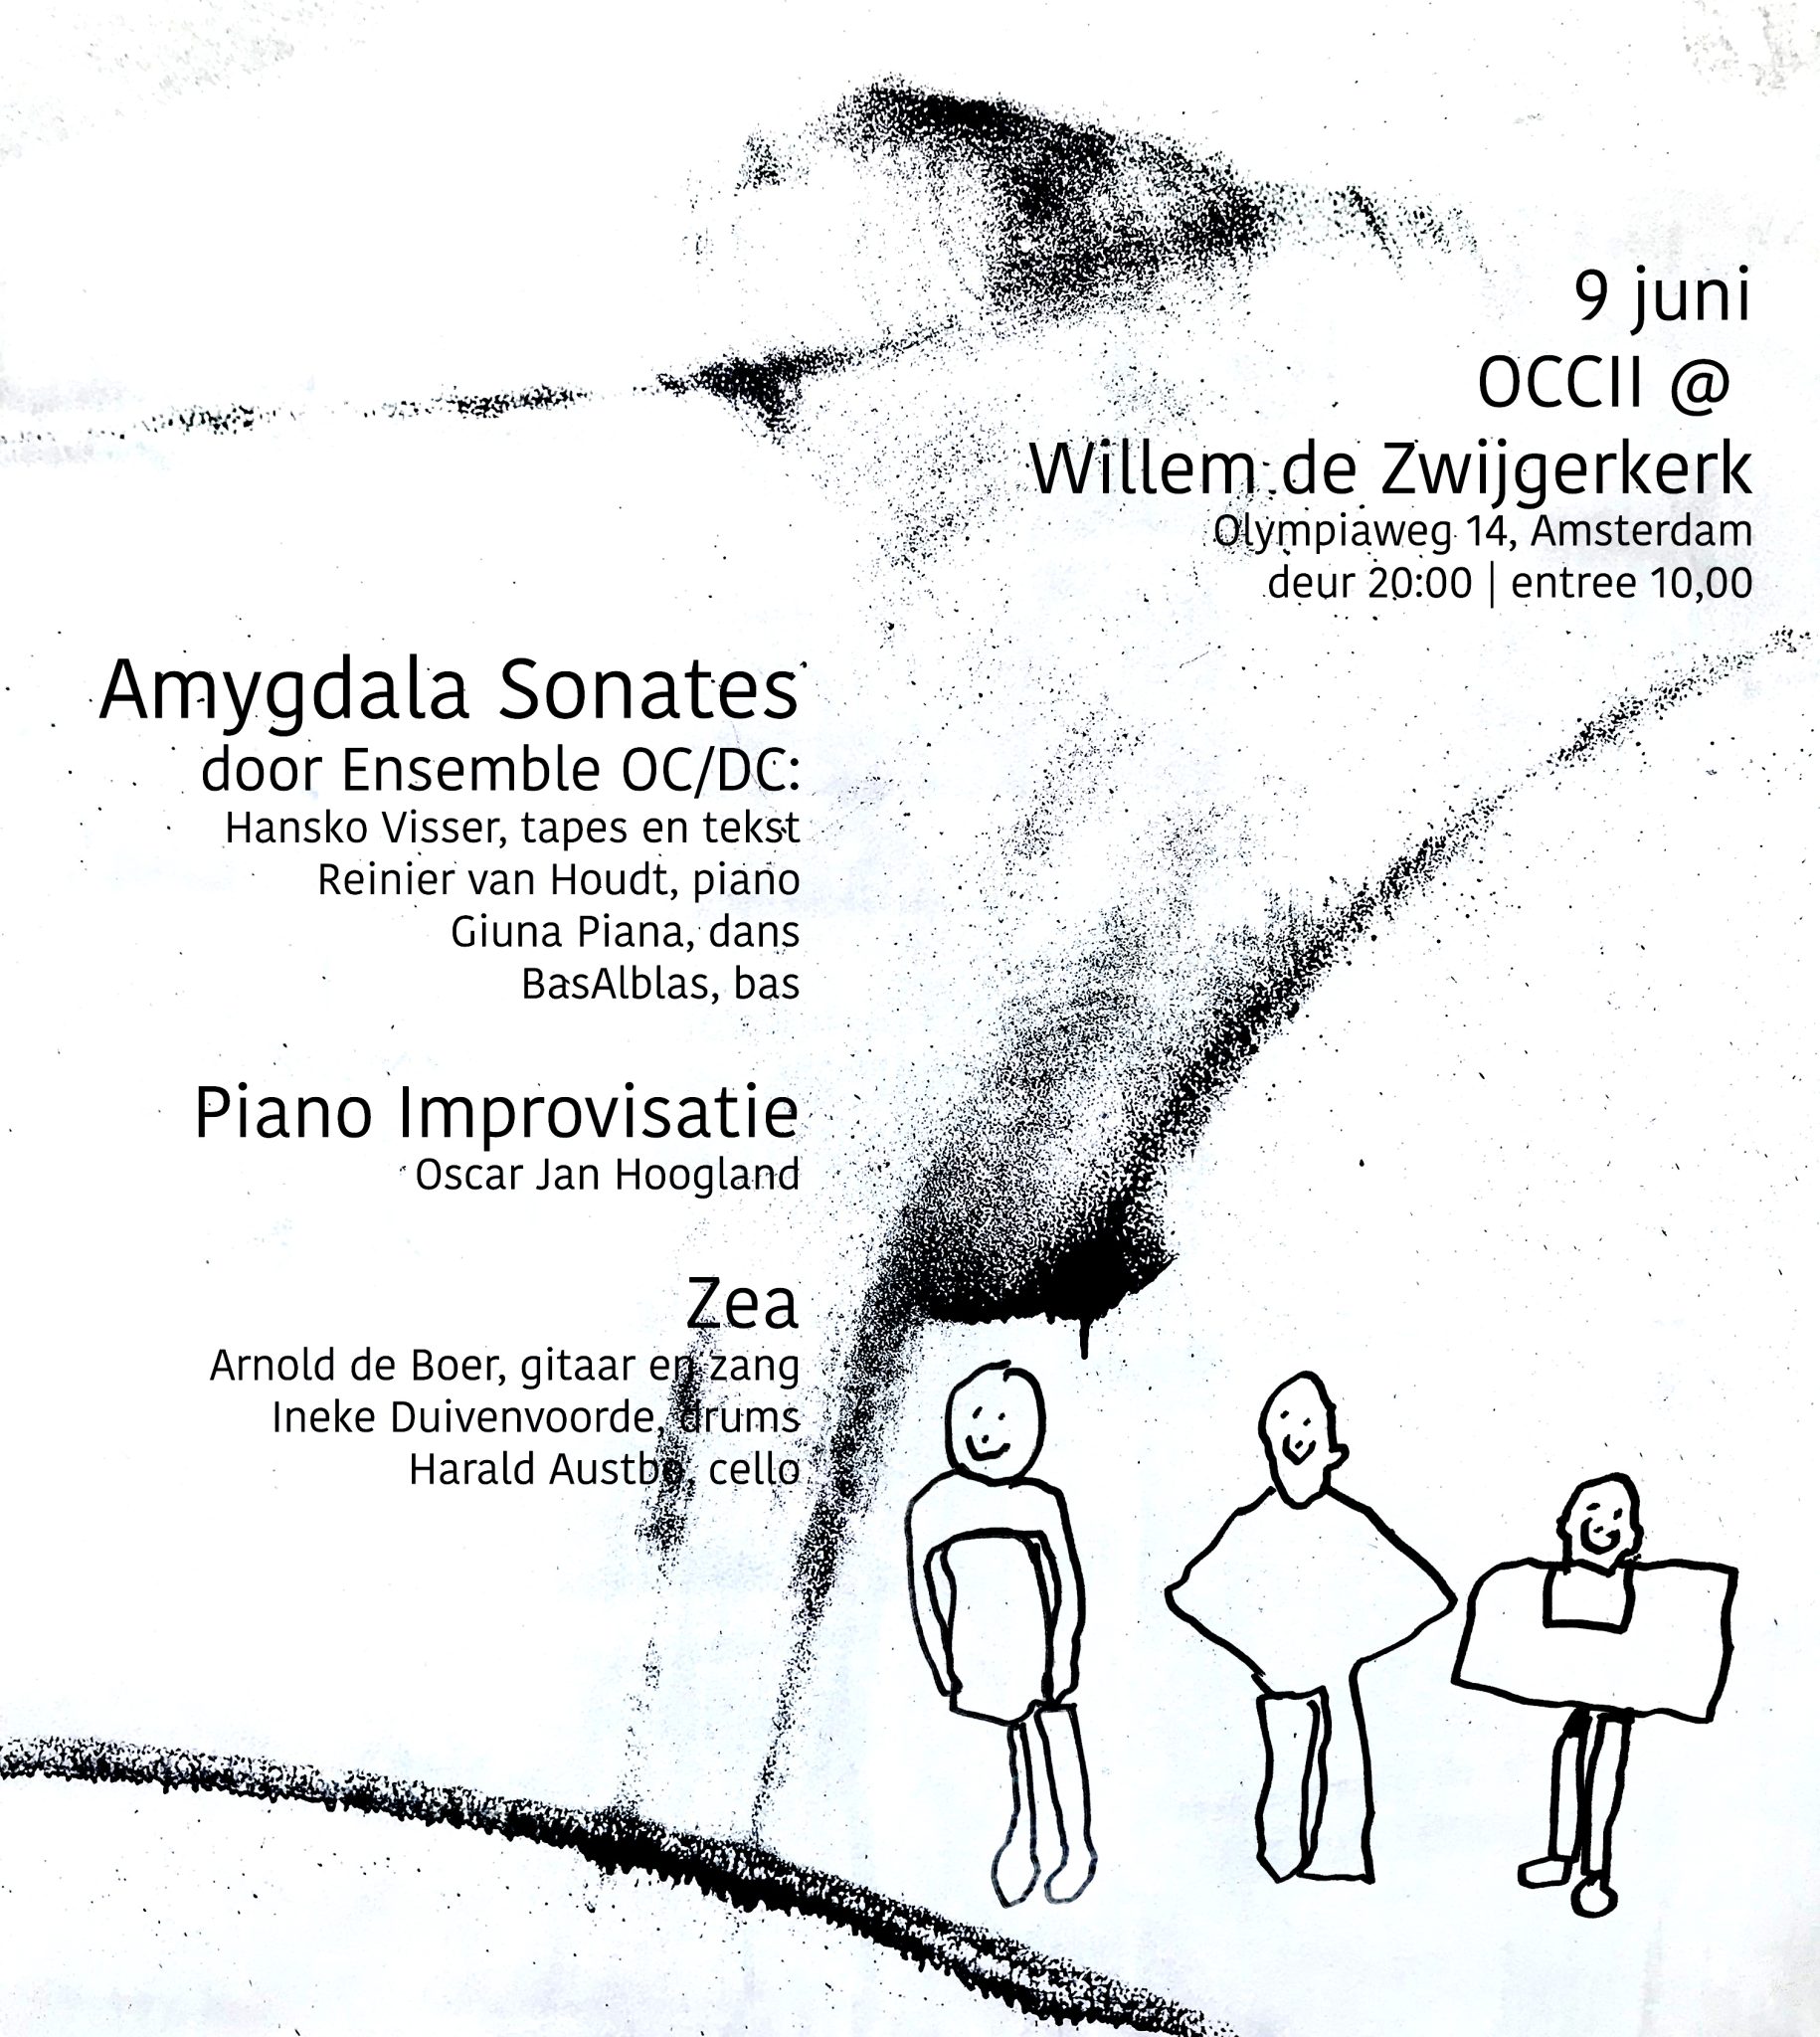 Ensemble OC/DC presents 'Amygdala Sonates' + Oscar Jan Hoogland + ZEA